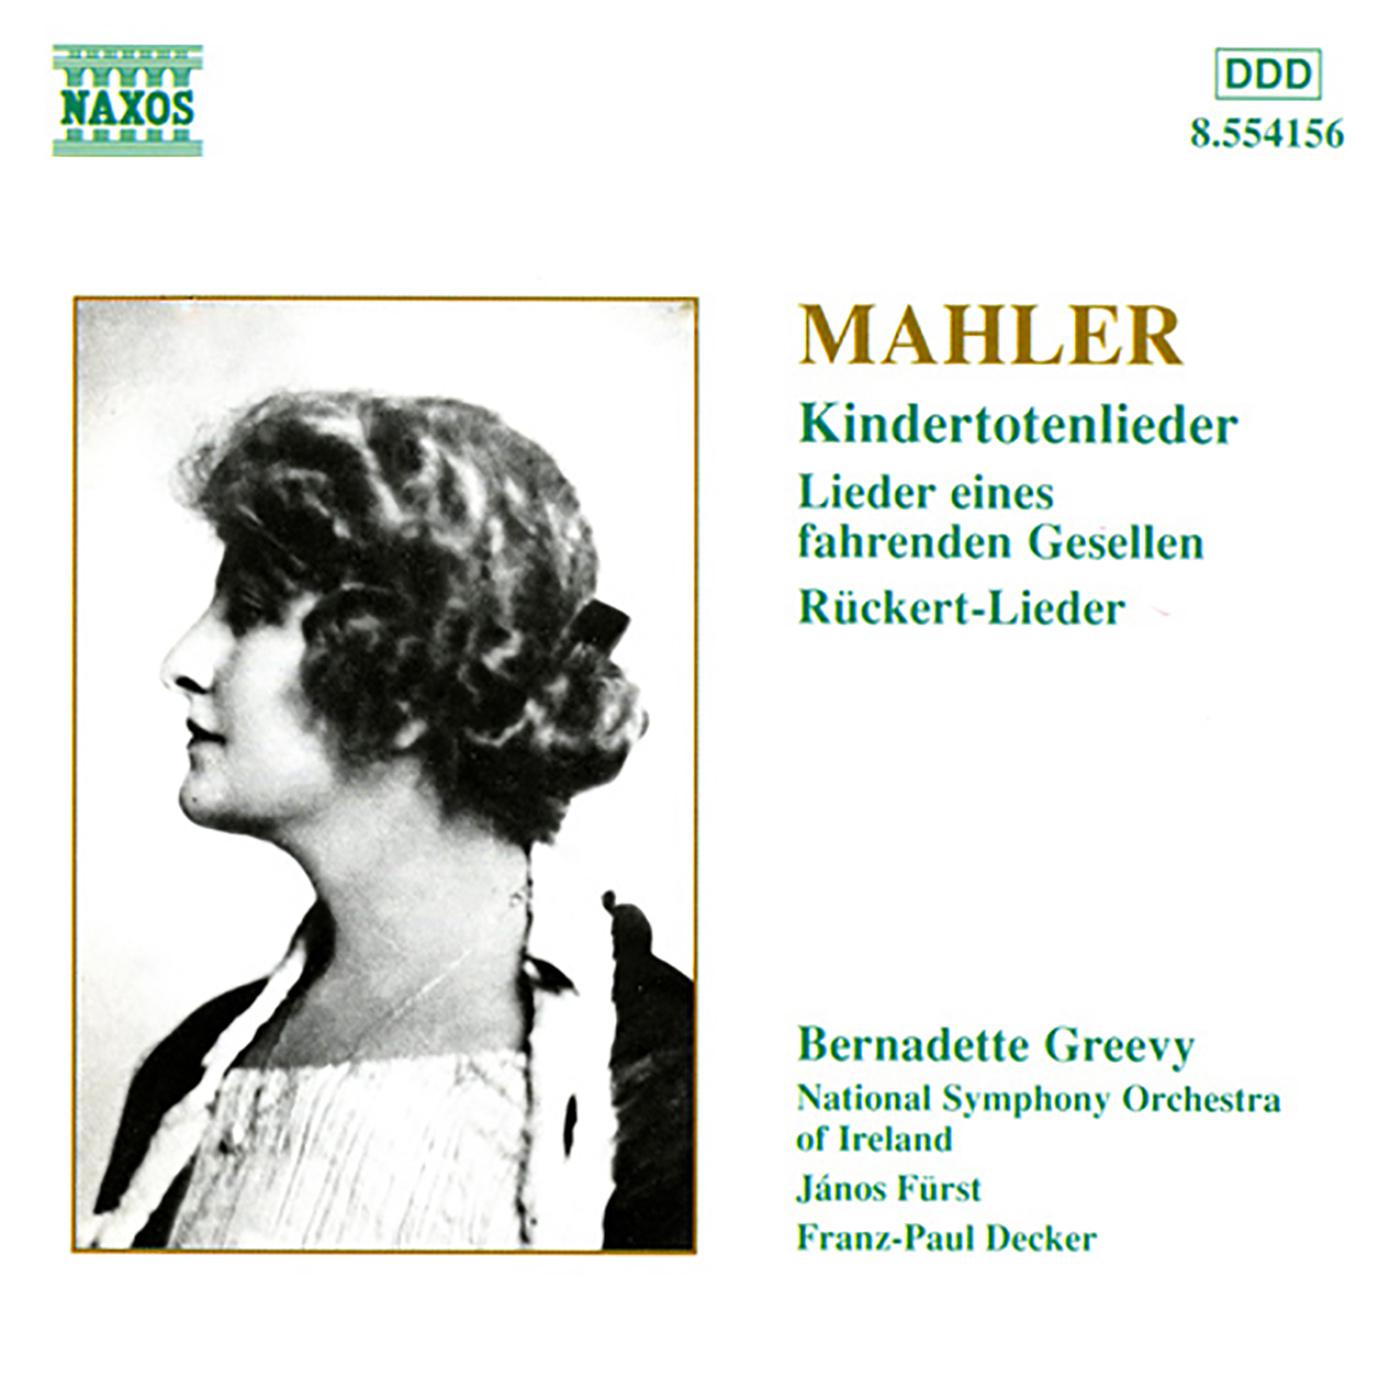 Bernadette Greevy - Rückert-Lieder (version for voice and orchestra): No. 3. Ich bin der Welt abhanden gekommen